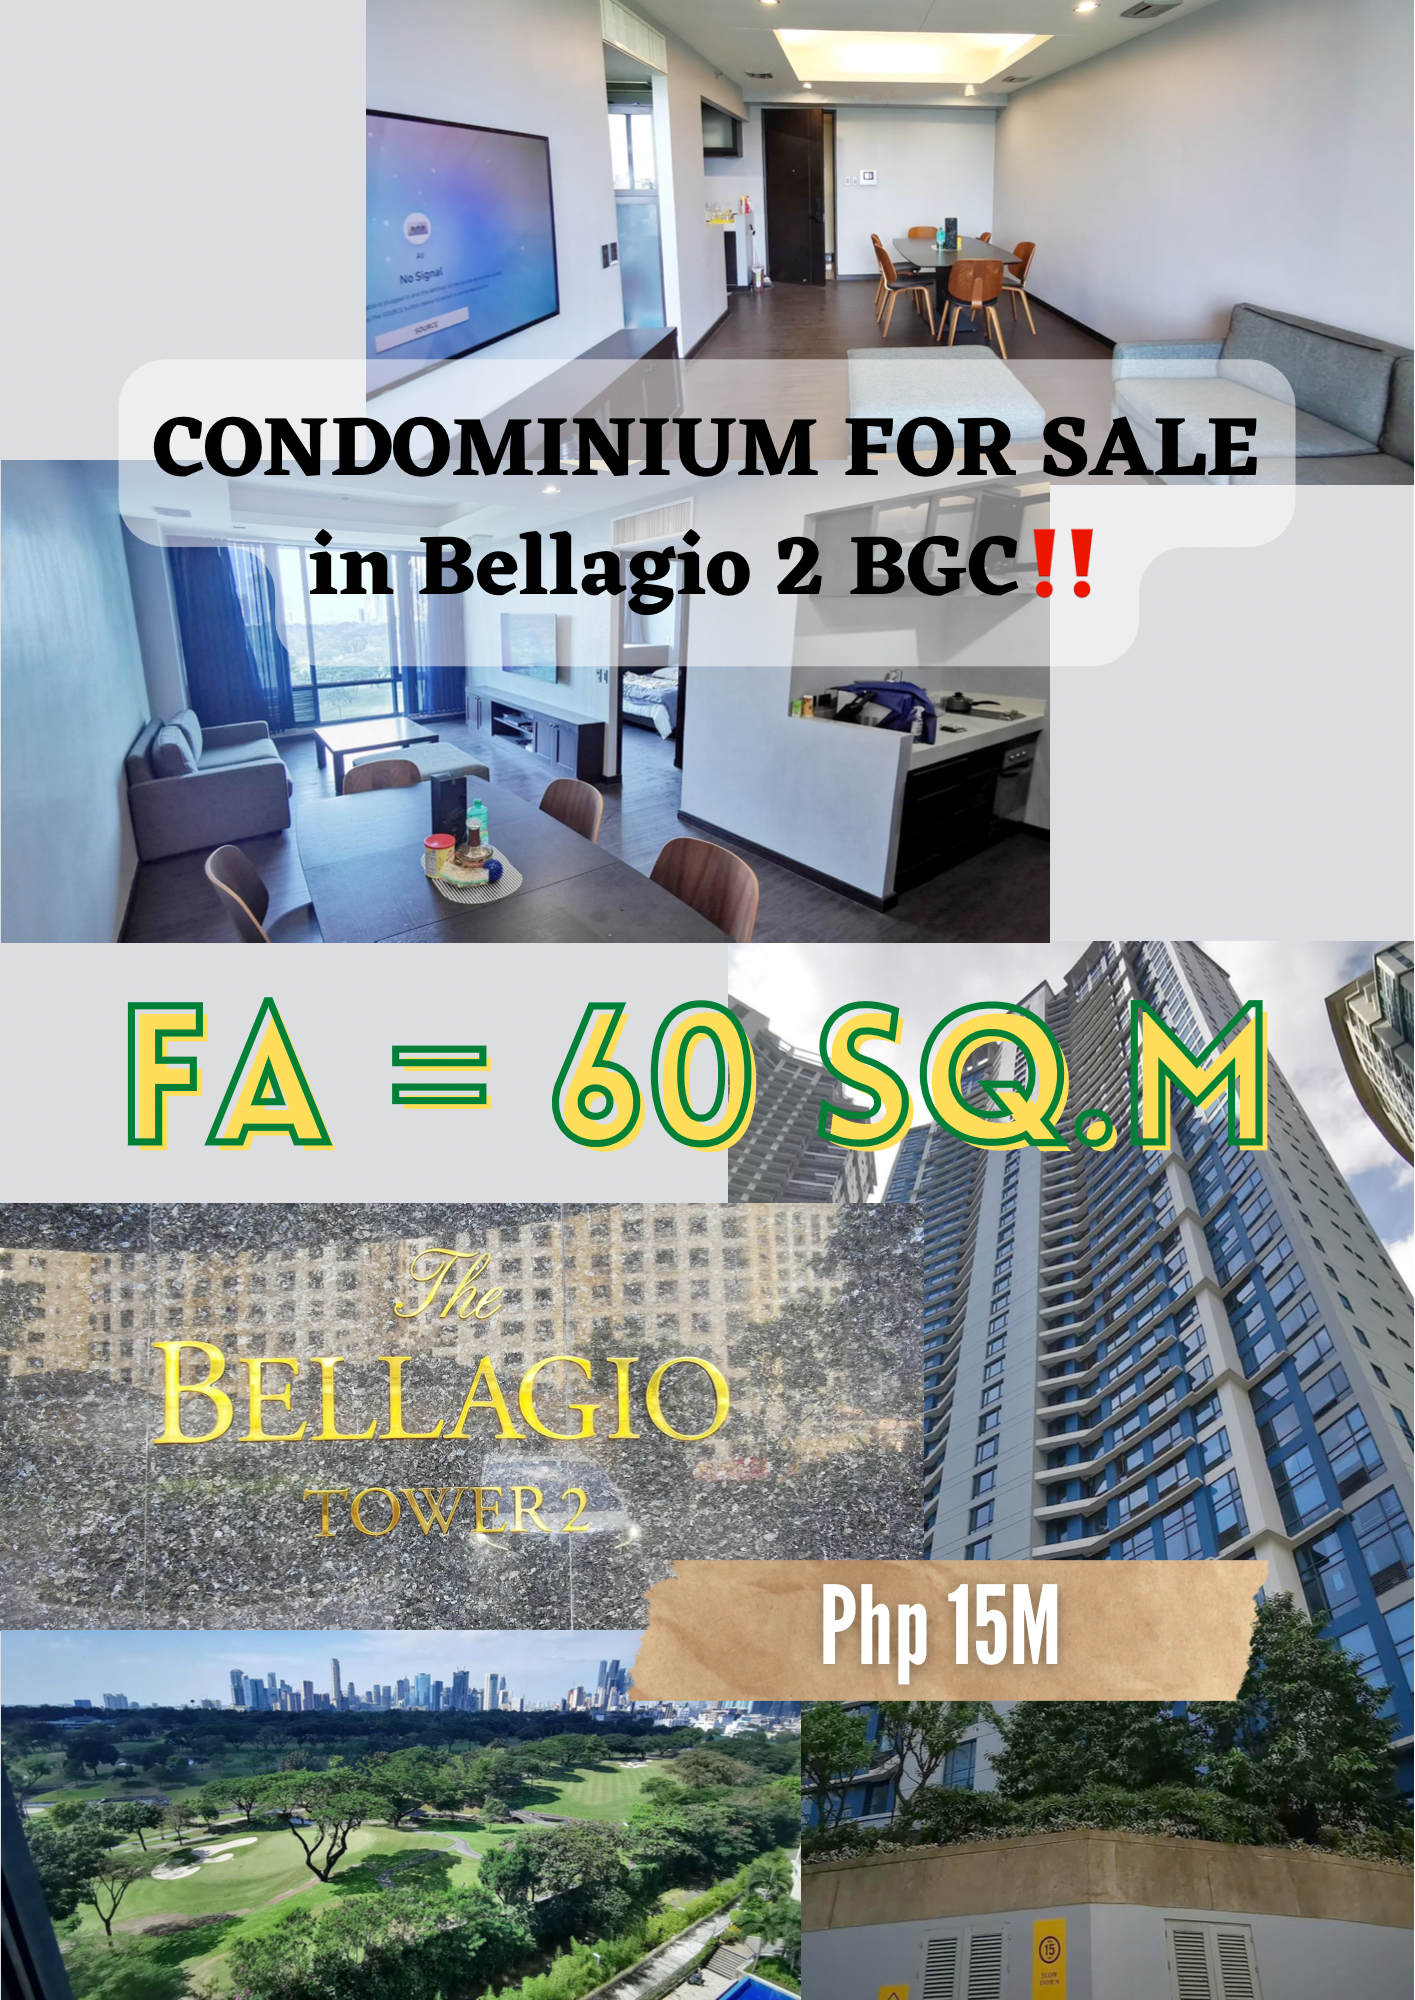 CONDOMINIUM FOR SALE in Bellagio 2 BGC, Taguig City‼️